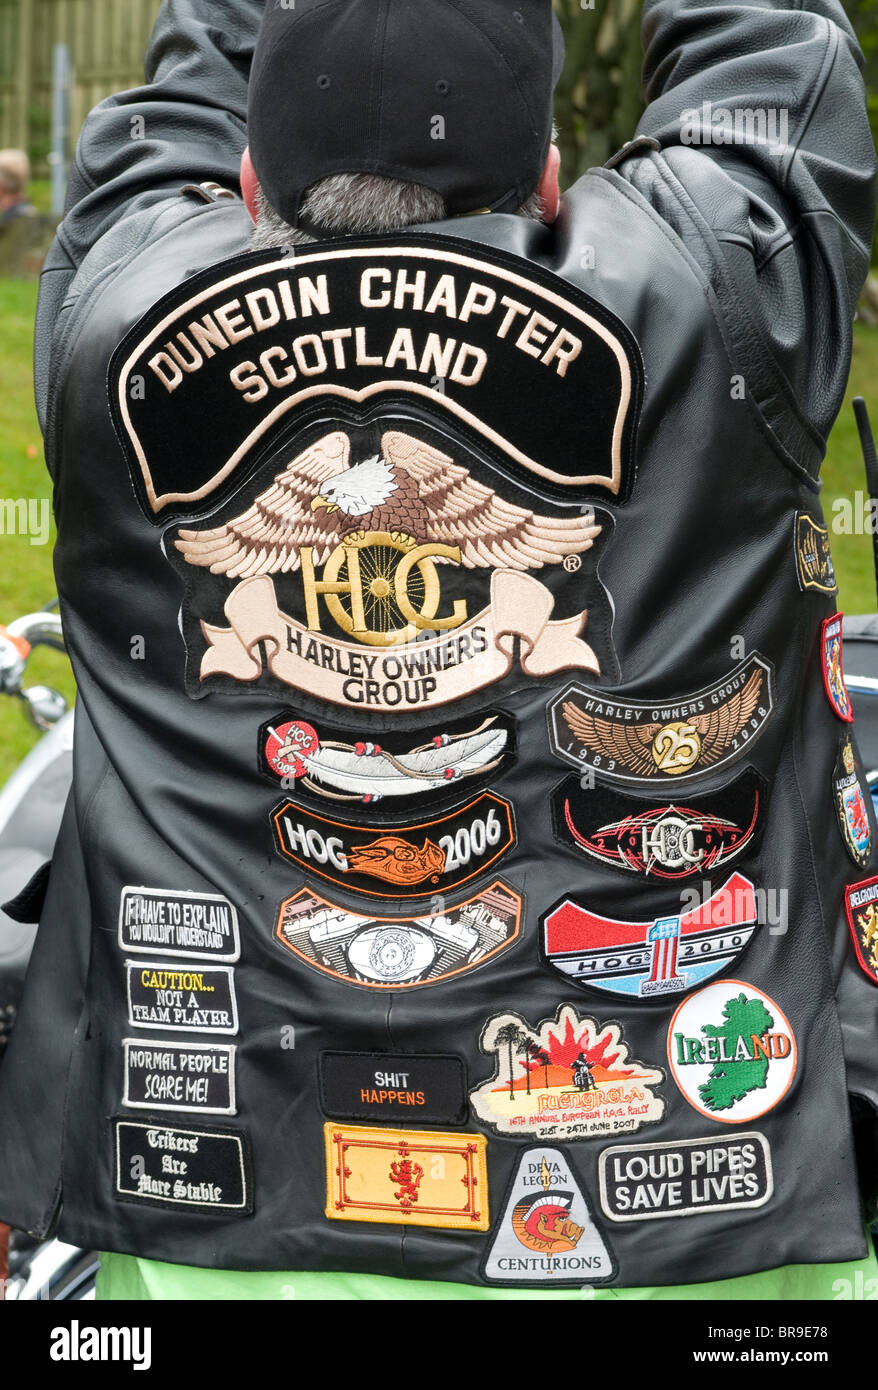 Fier propriétaire de vélo Harley Davidson Bikers, montre son blouson de cuir décoré d'insignes et logos 6656 SCO Banque D'Images